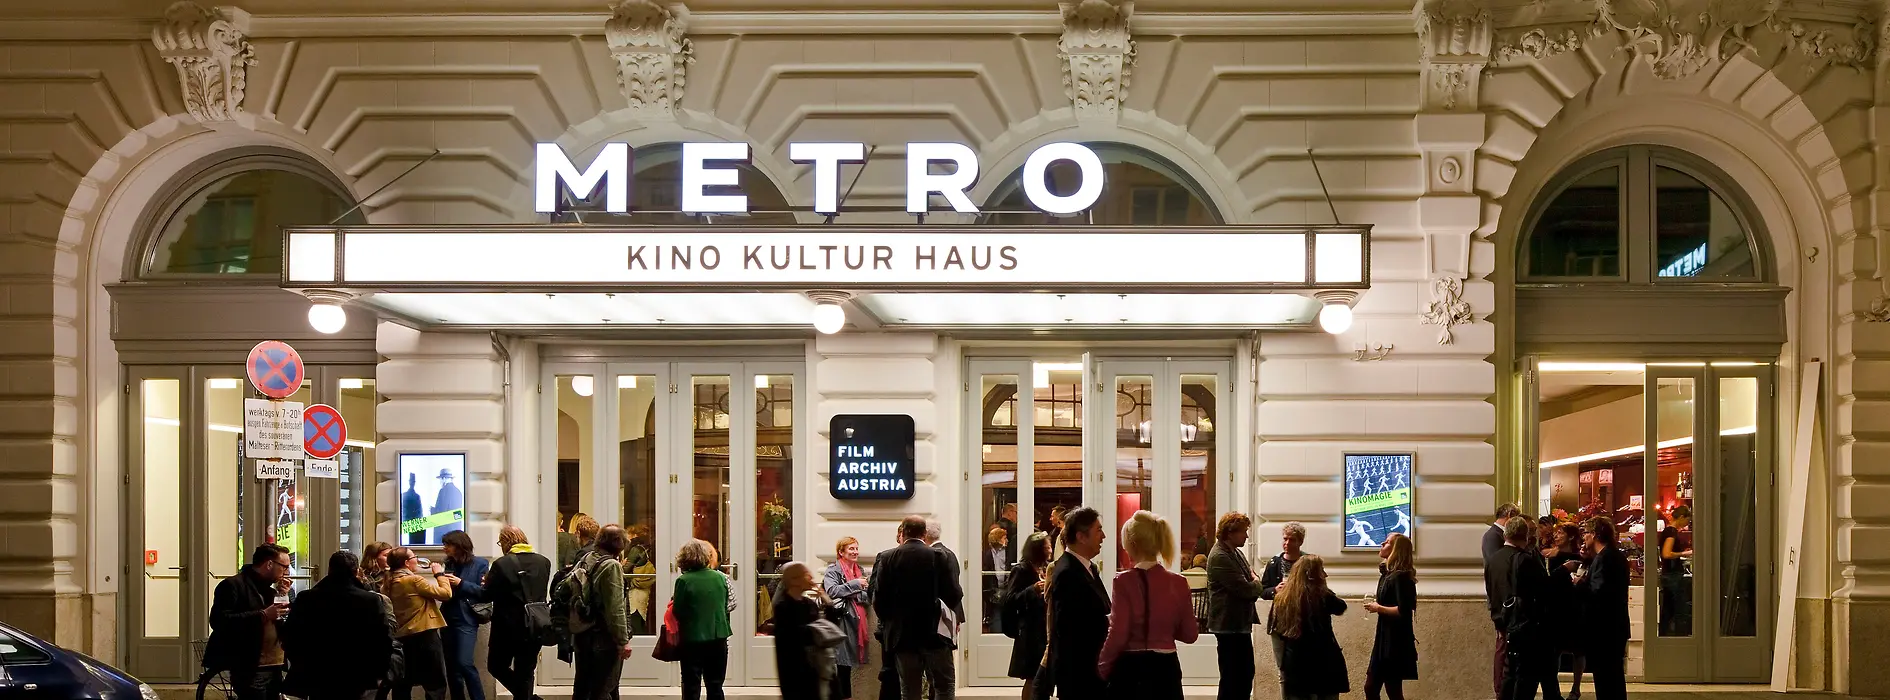 Metro Cinema